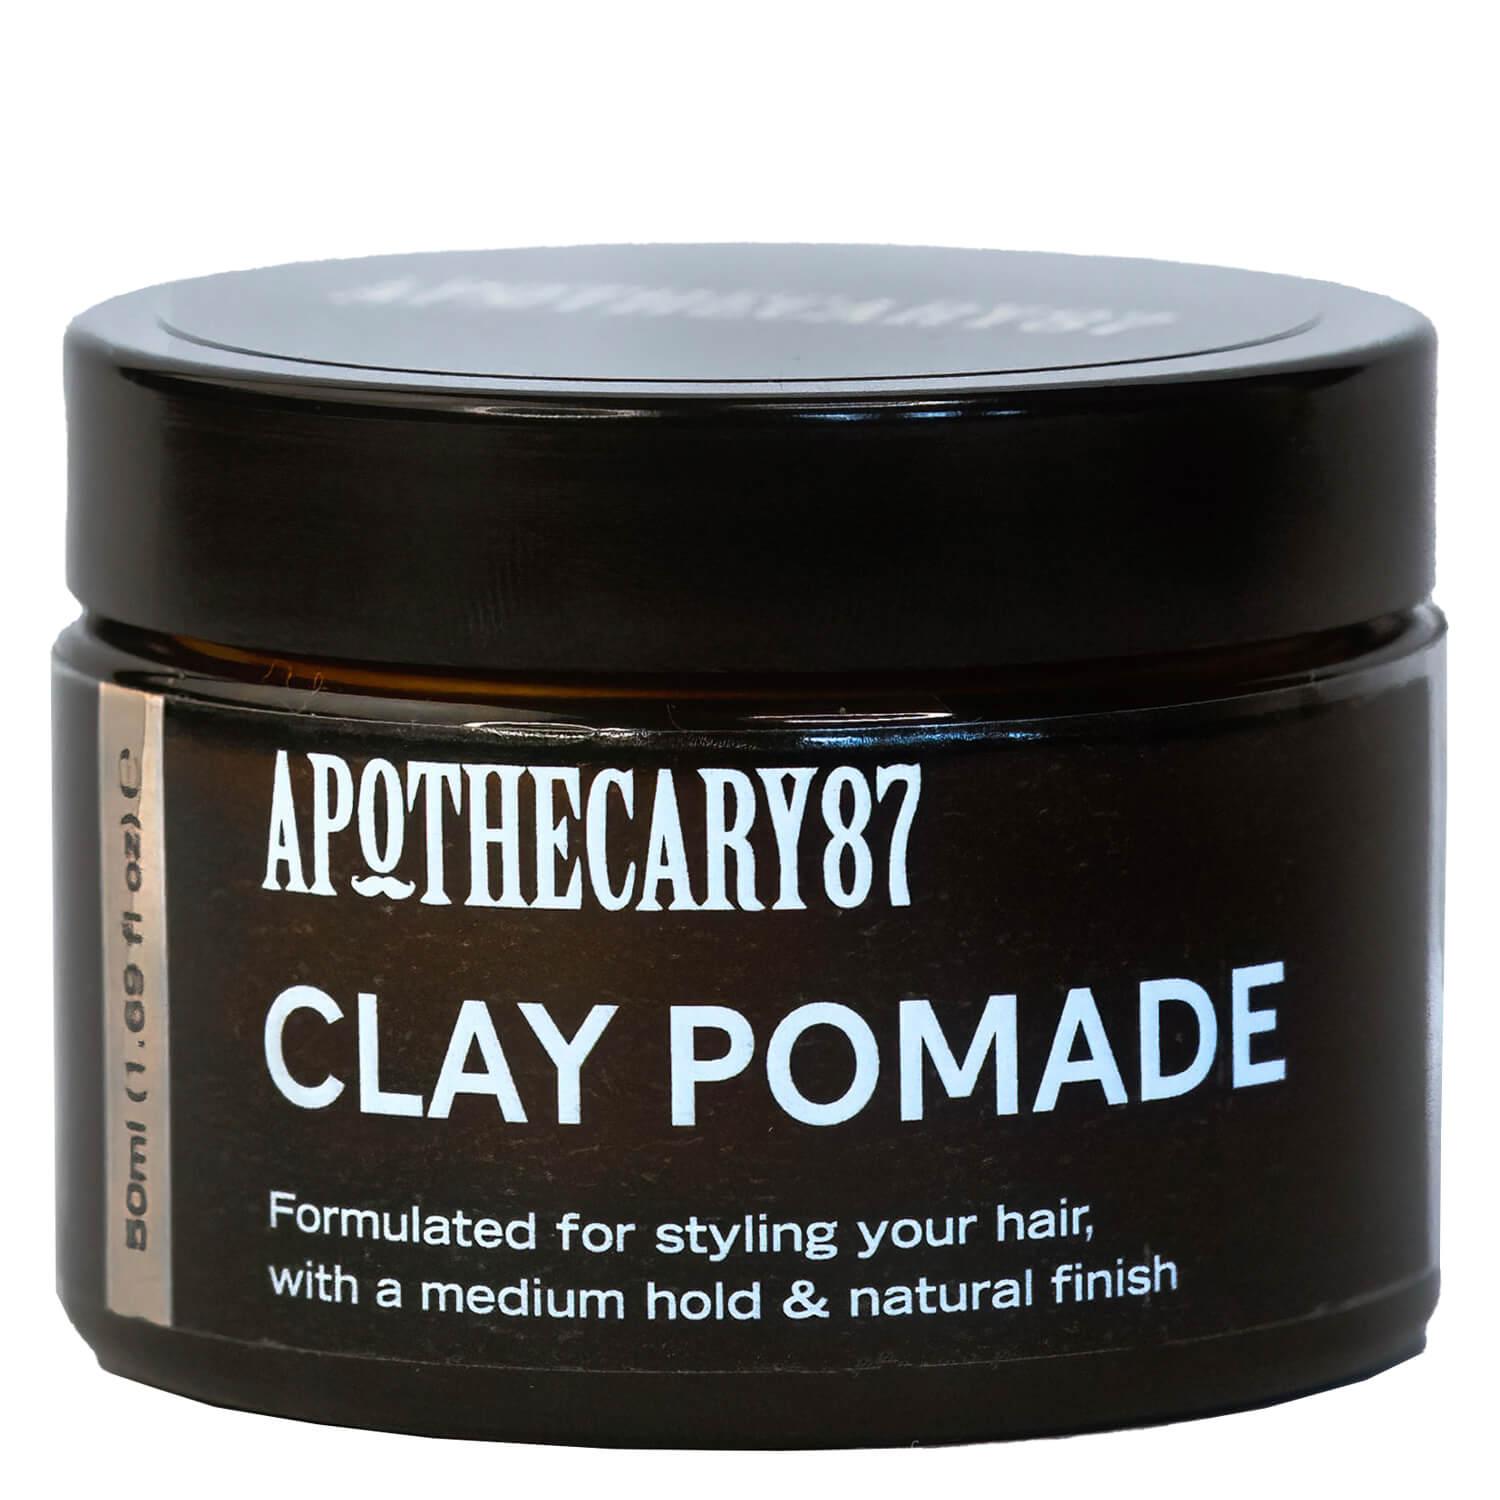 Apothecary87 Grooming - Clay Pomade Vanilla & Mango